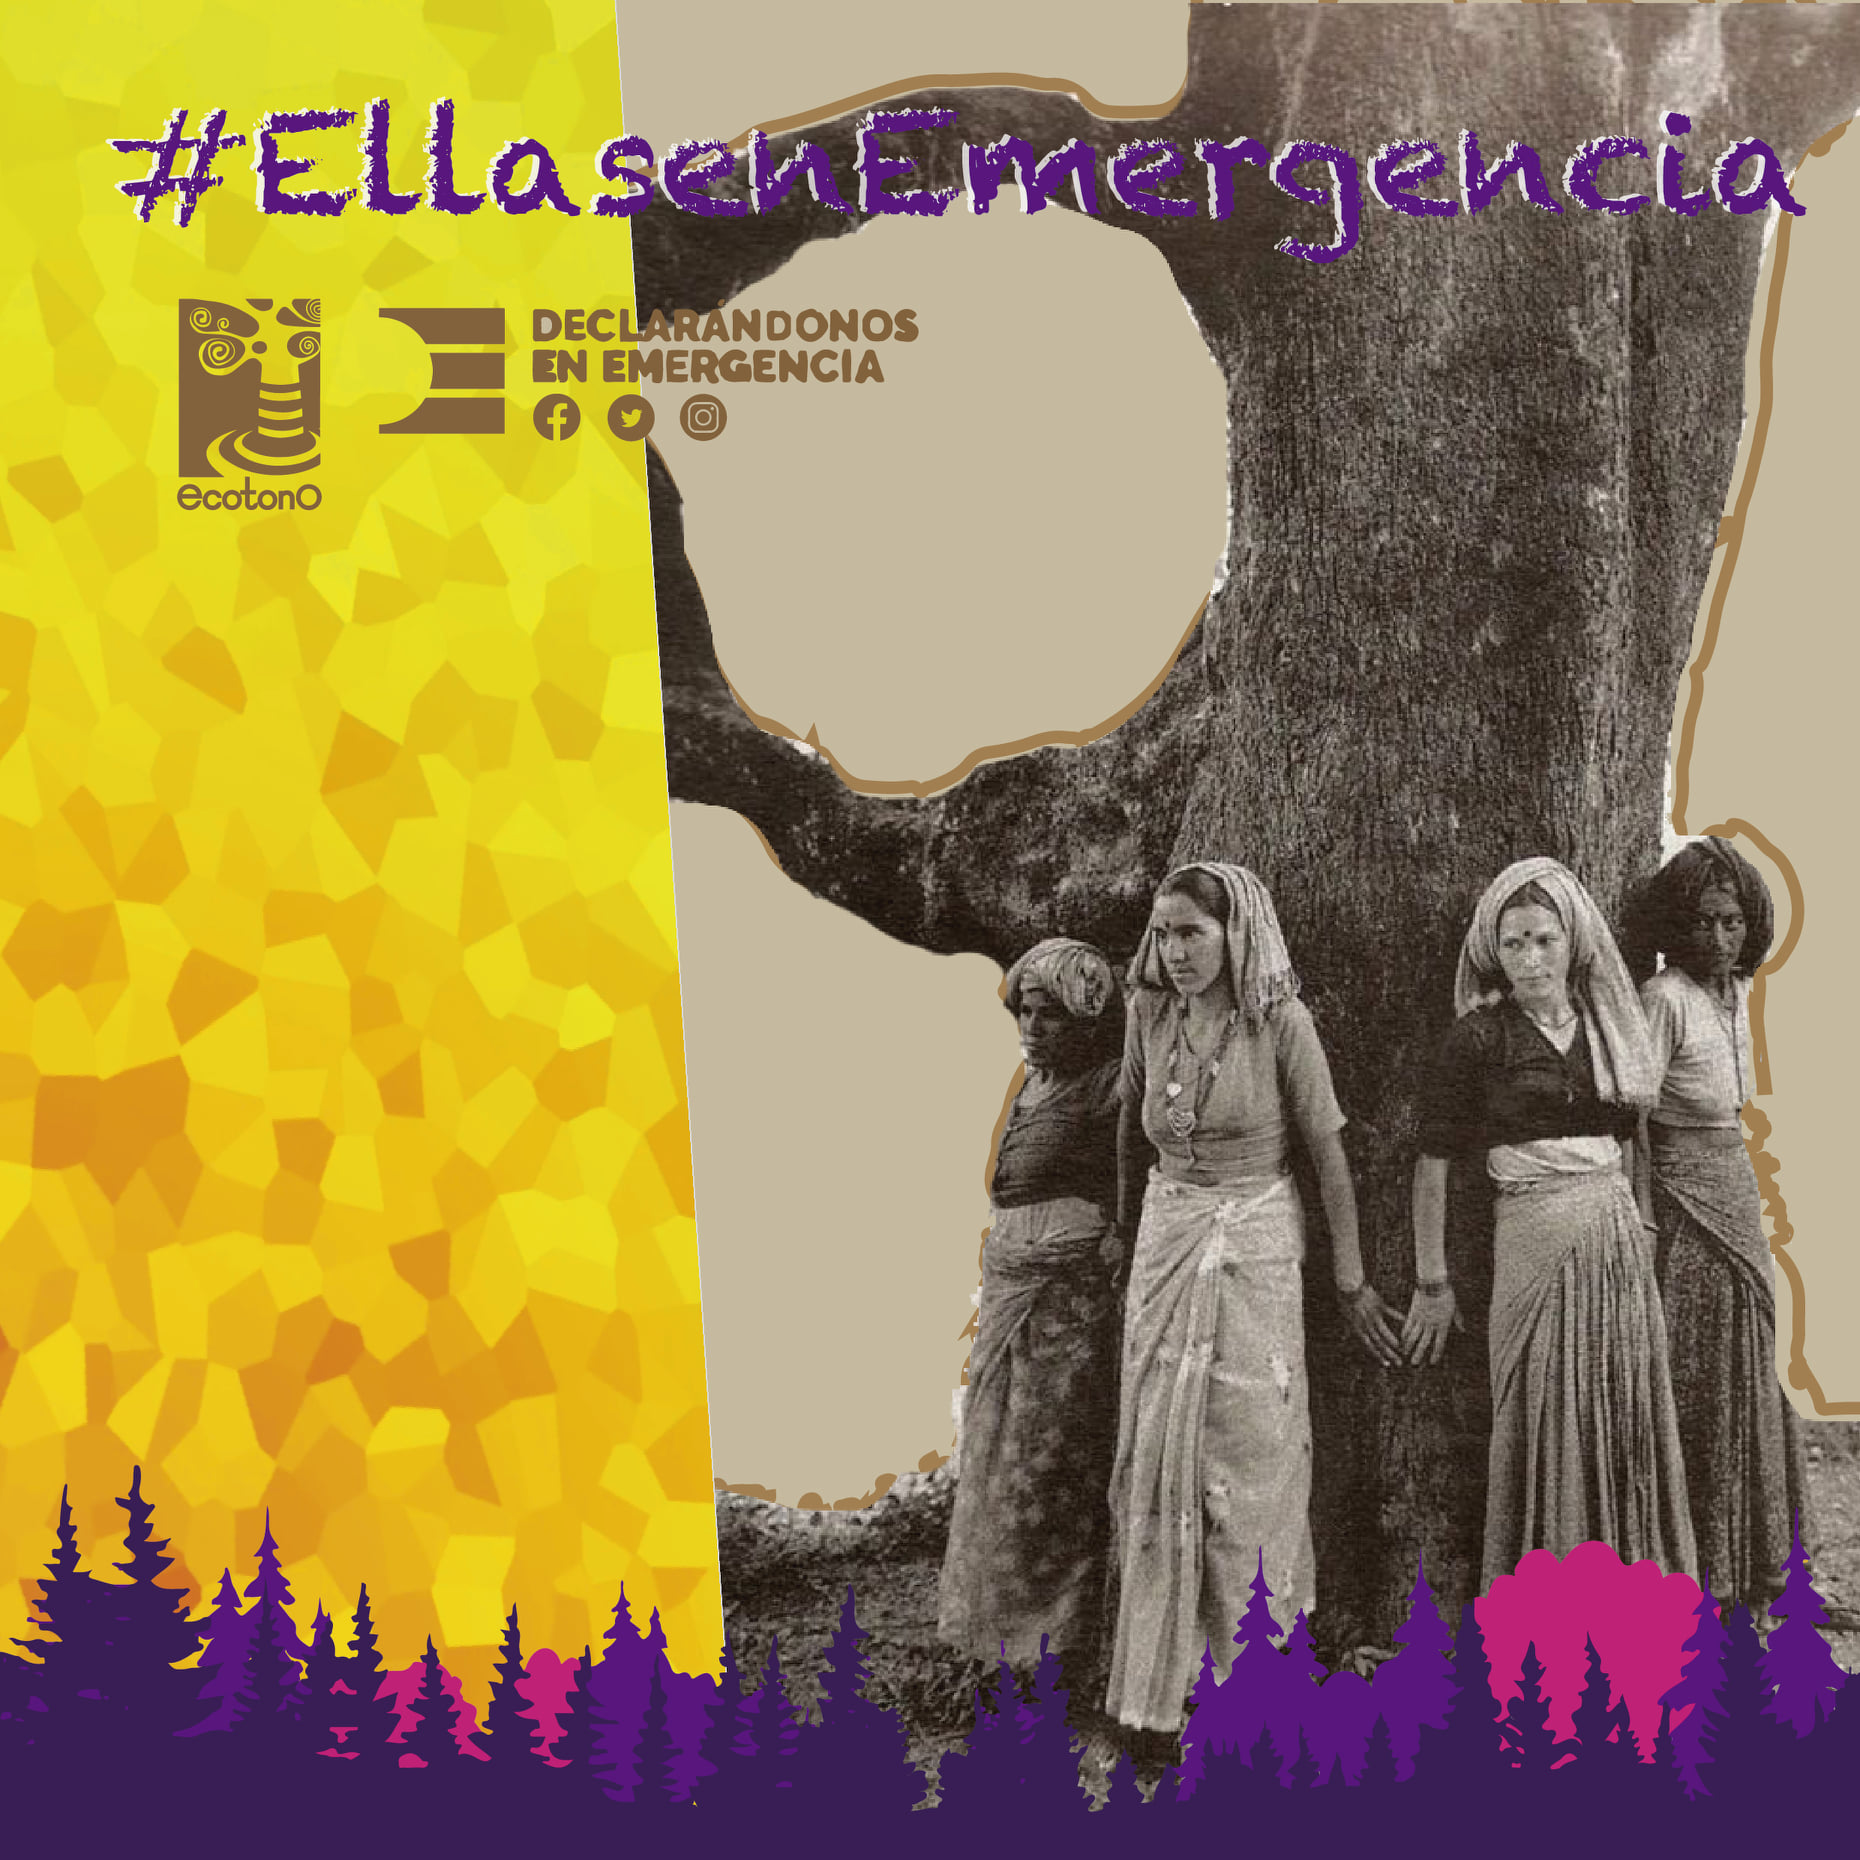 Mujeres en la lucha por el Cambio Climático: Movimiento Chipko en #EllasenEmergencia